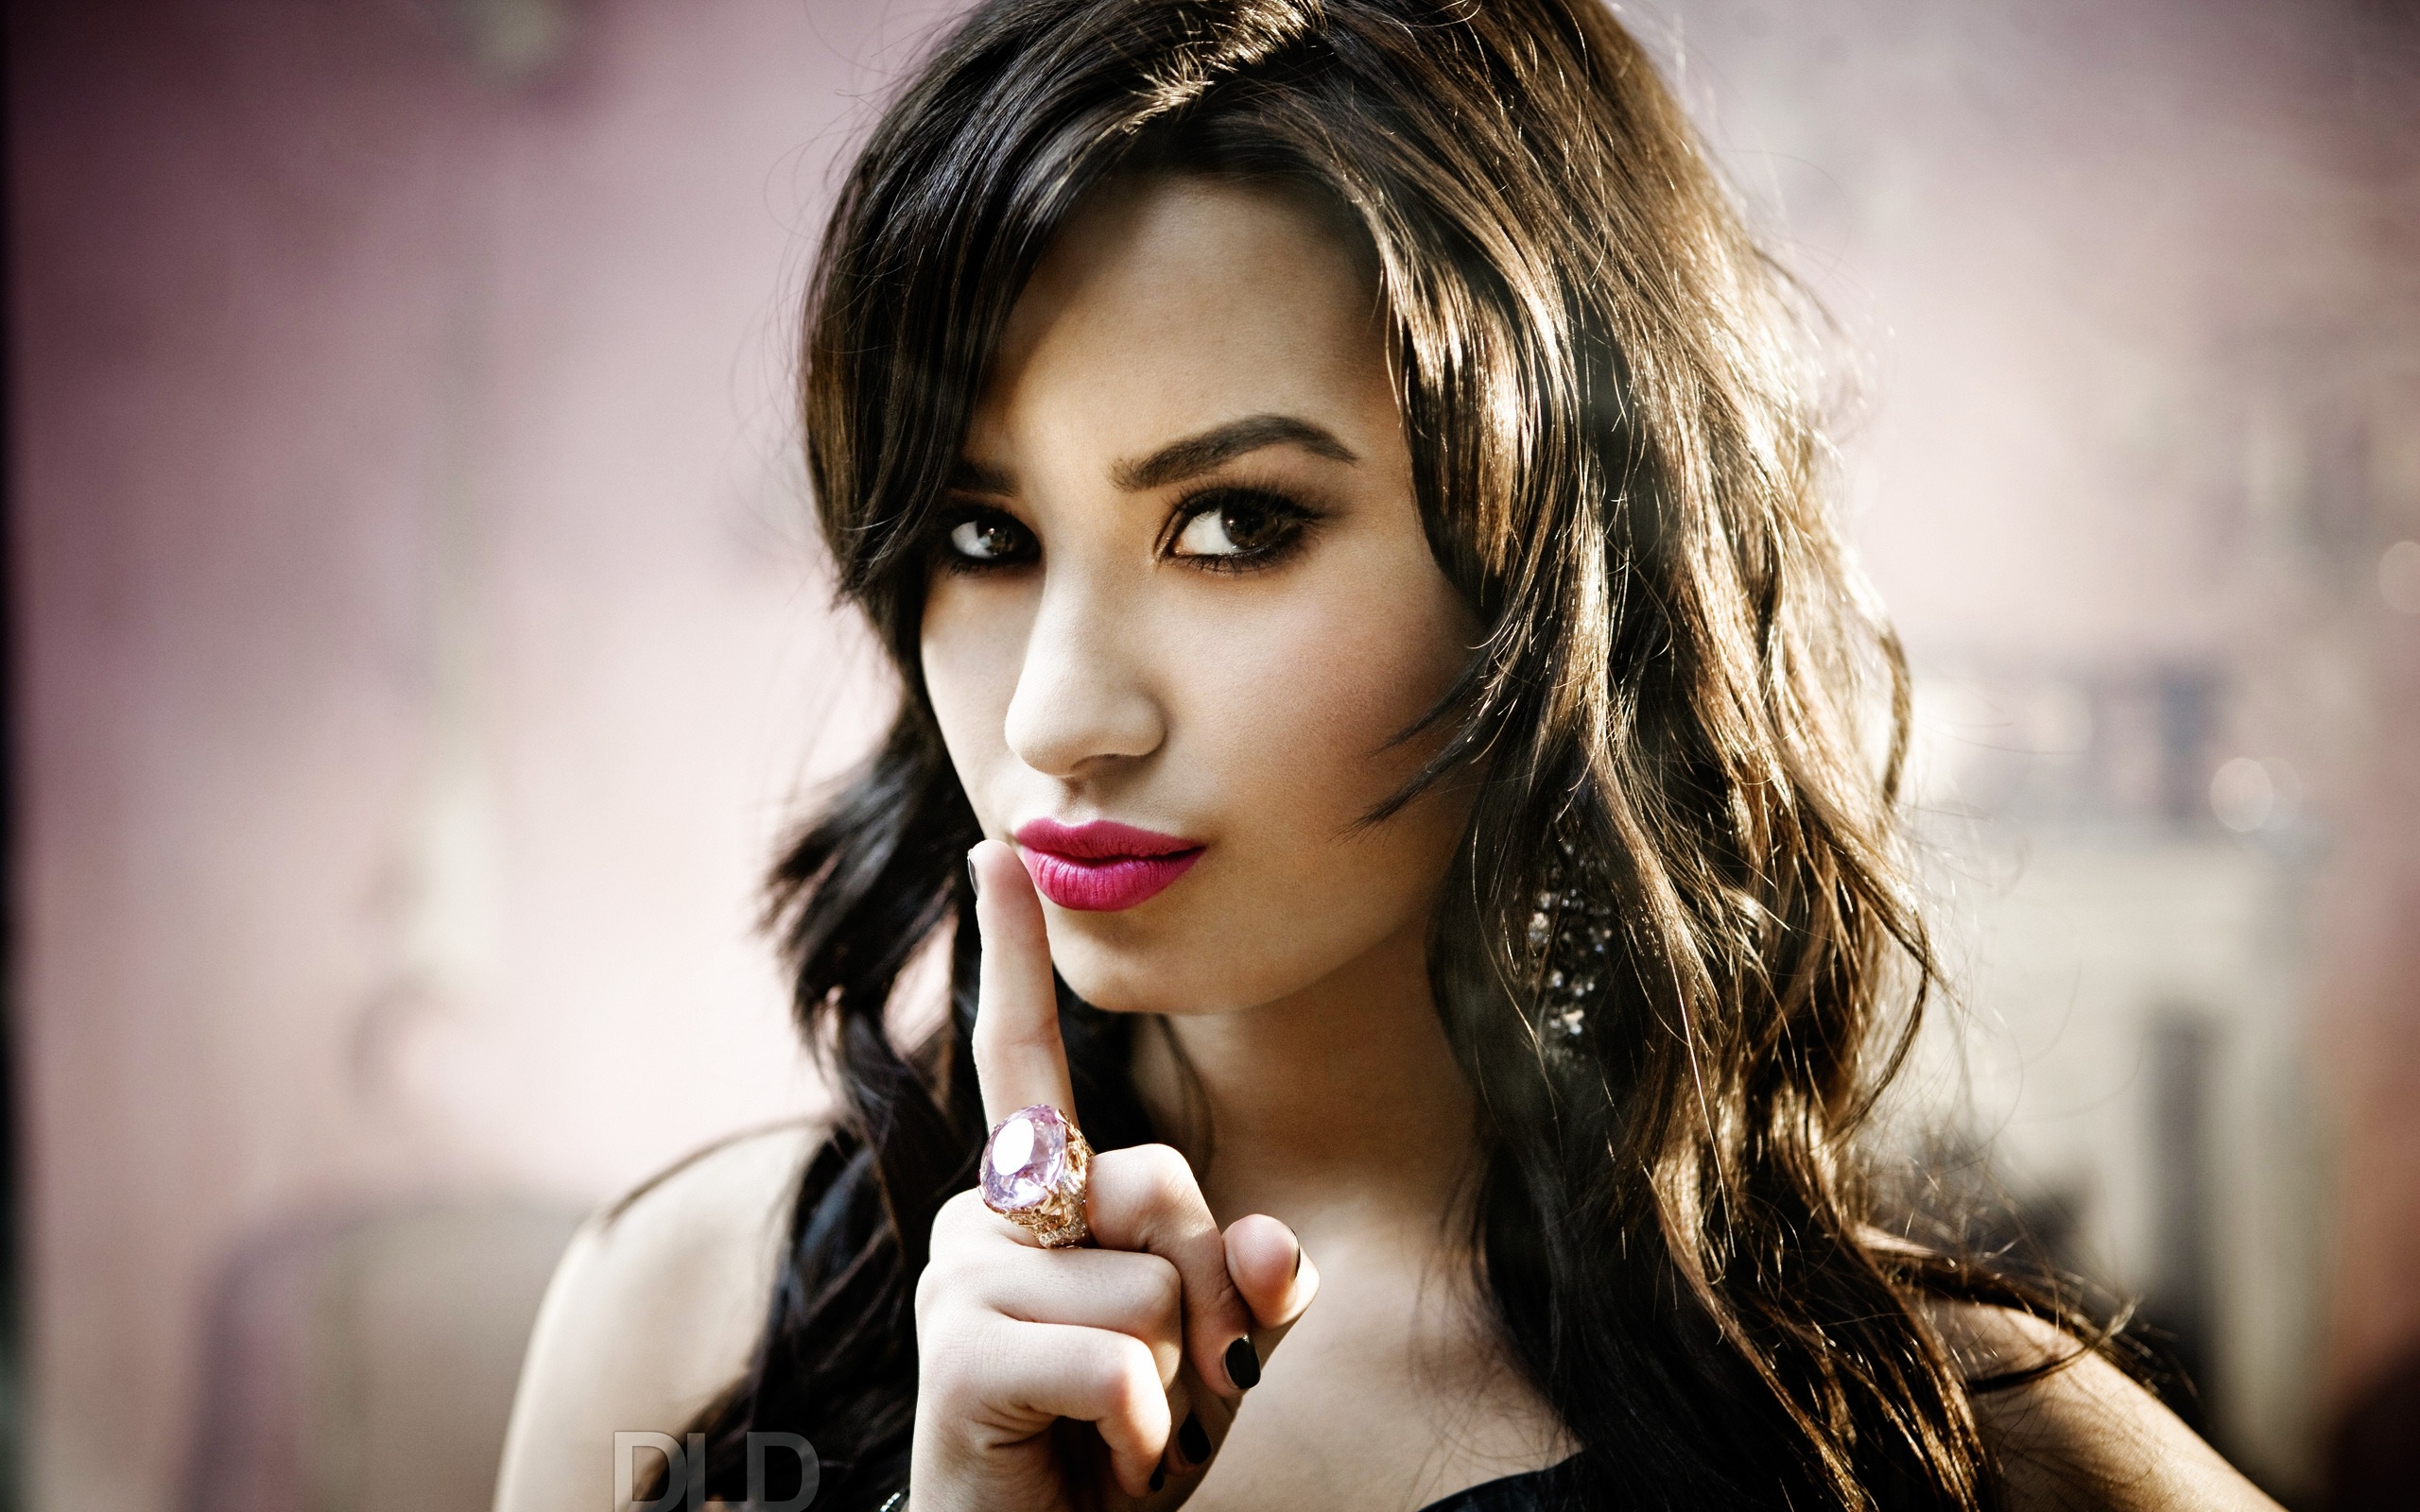 Demi Lovato Look for 2560 x 1600 widescreen resolution